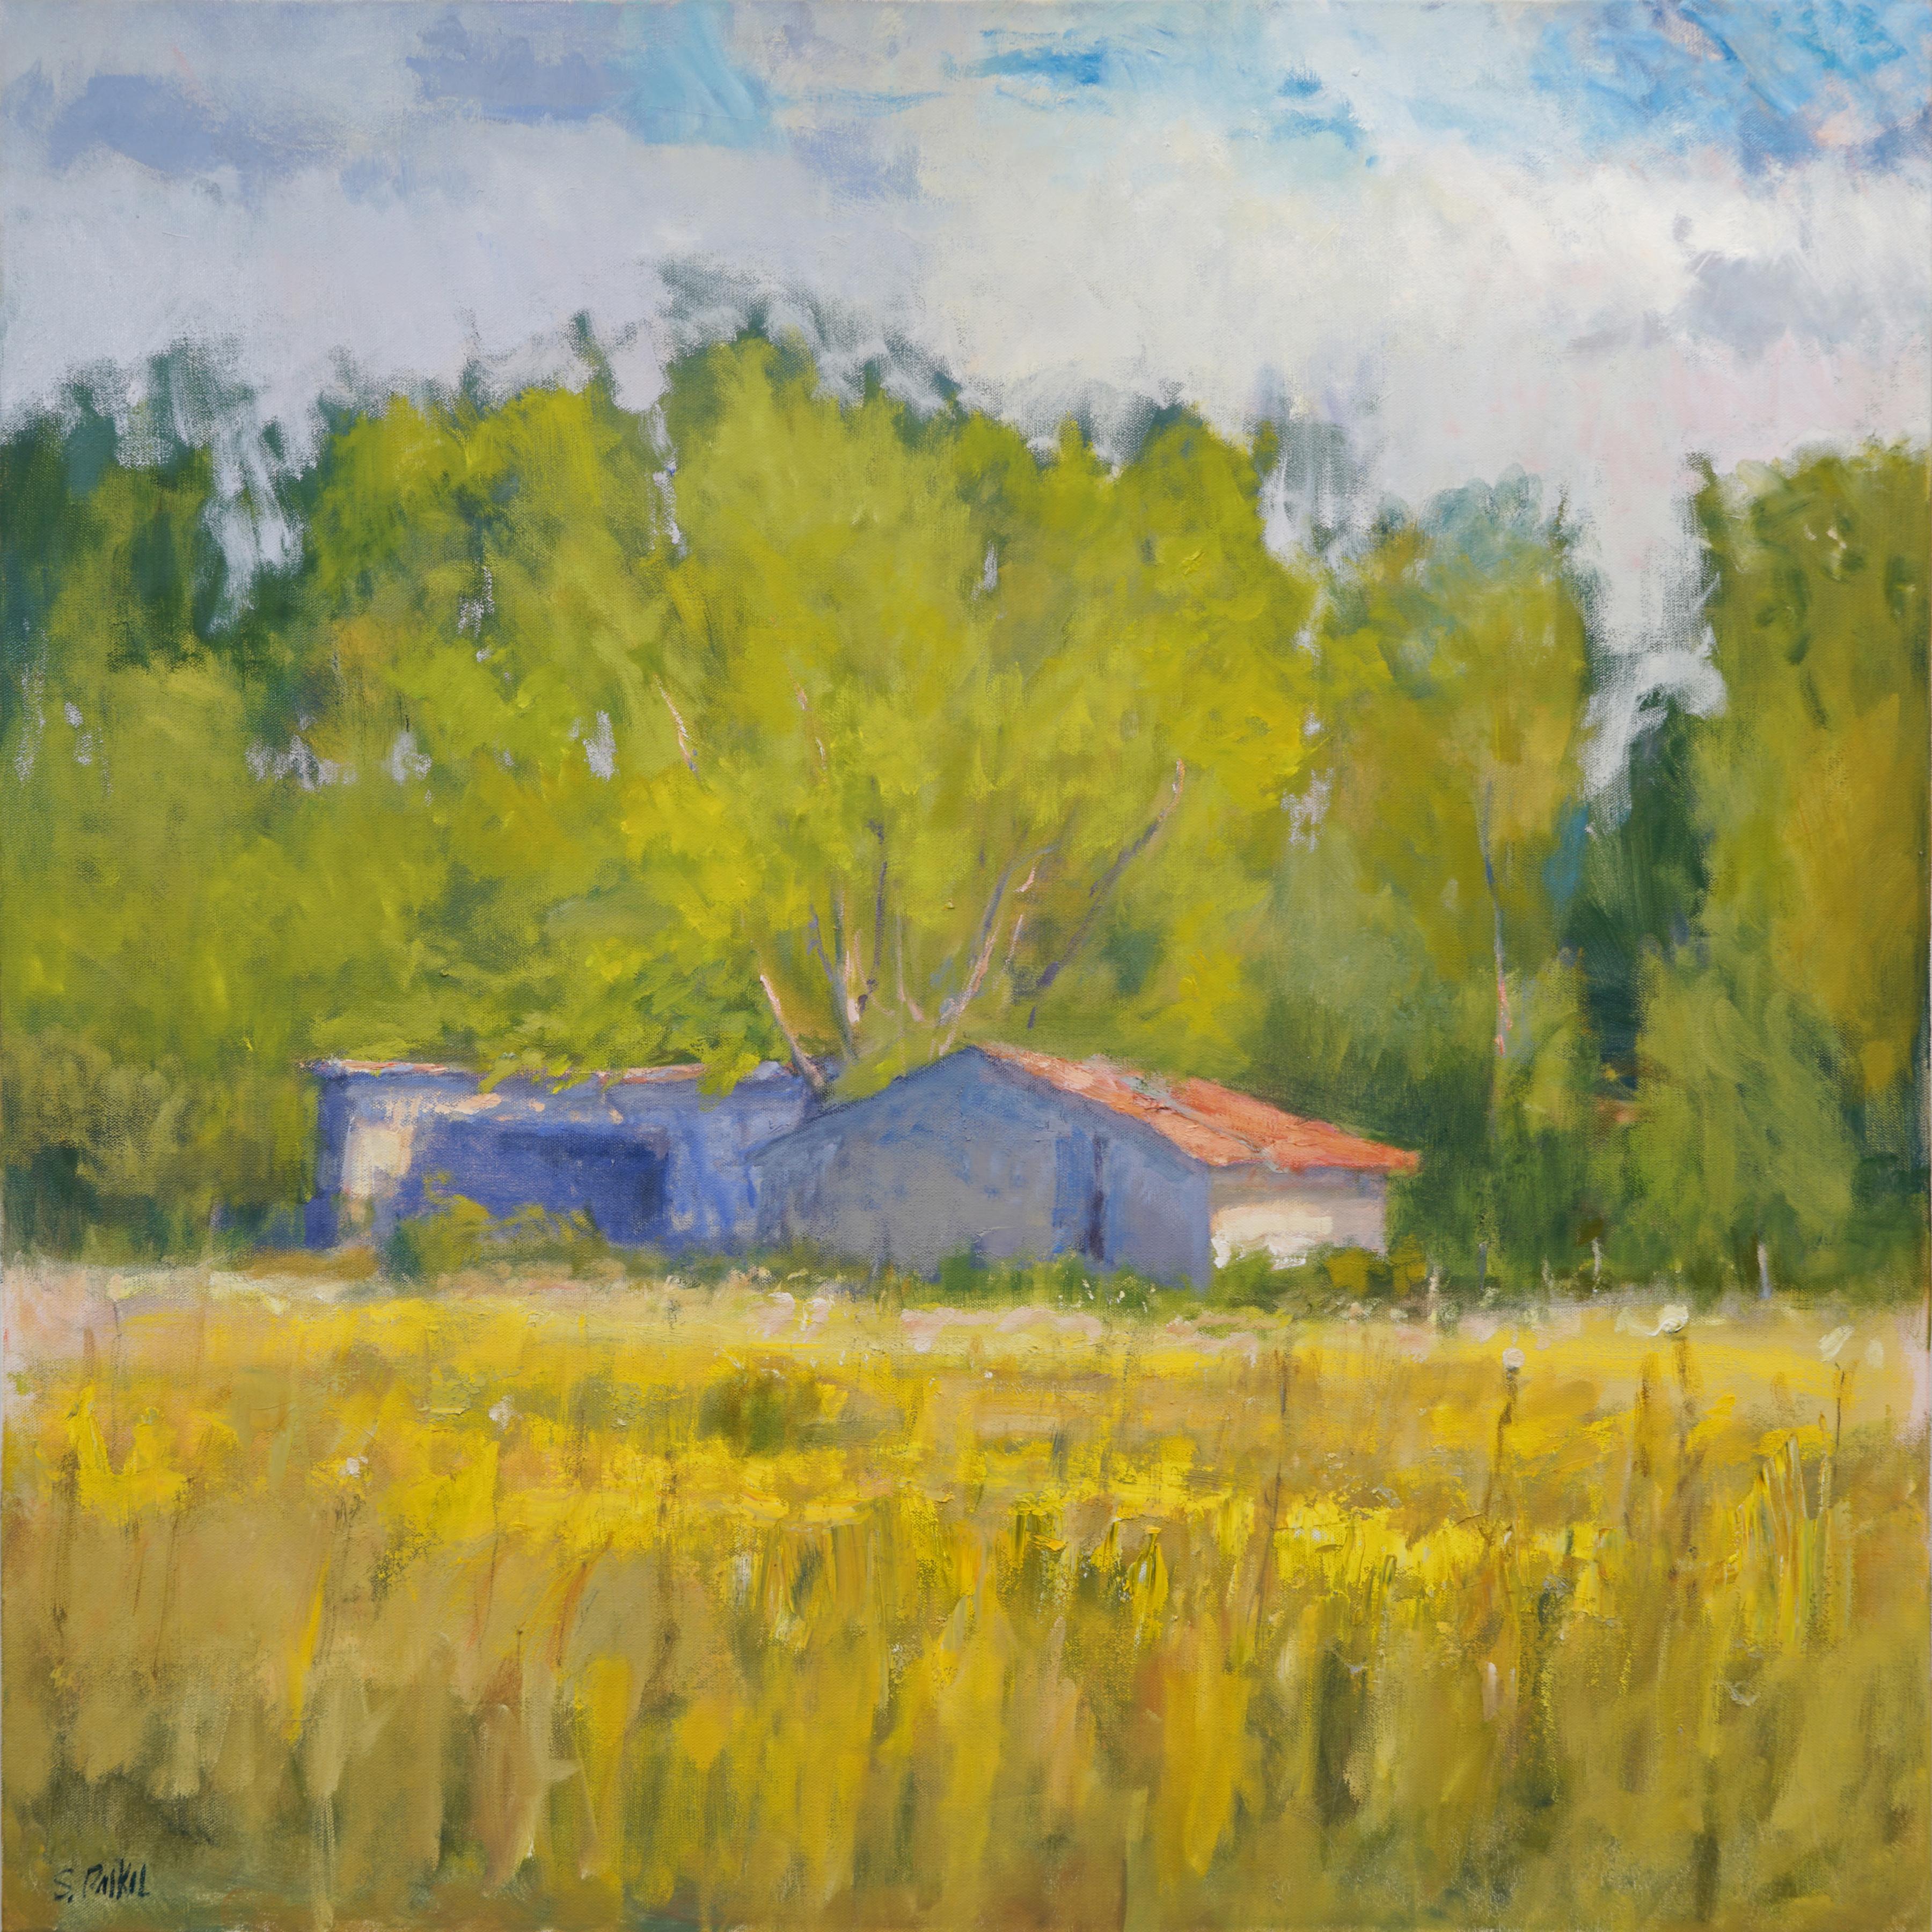  Spätes nachnoon, Texas Landschaft, Öl, amerikanischer Impressionismus, Scheune, Sonne 36x36